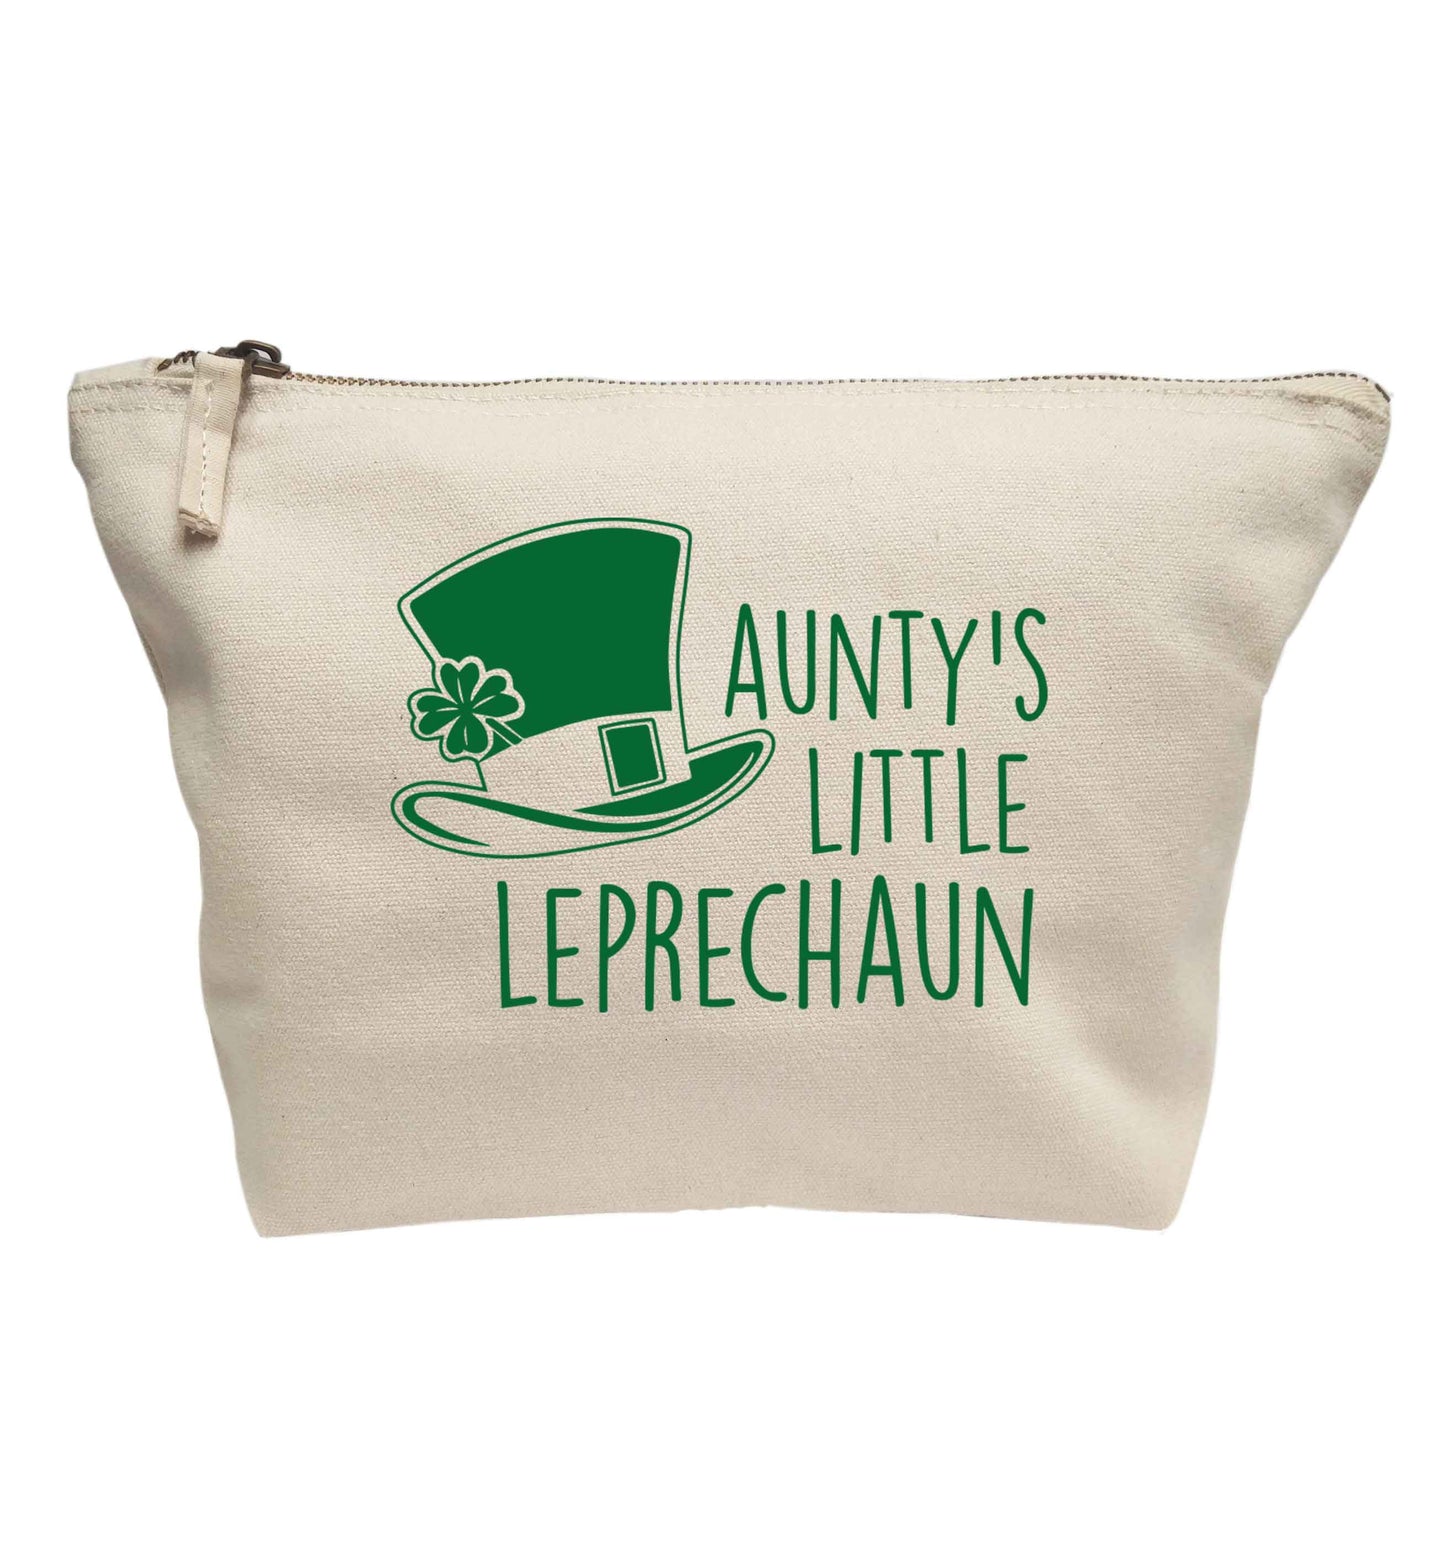 Aunty's little leprechaun | Makeup / wash bag